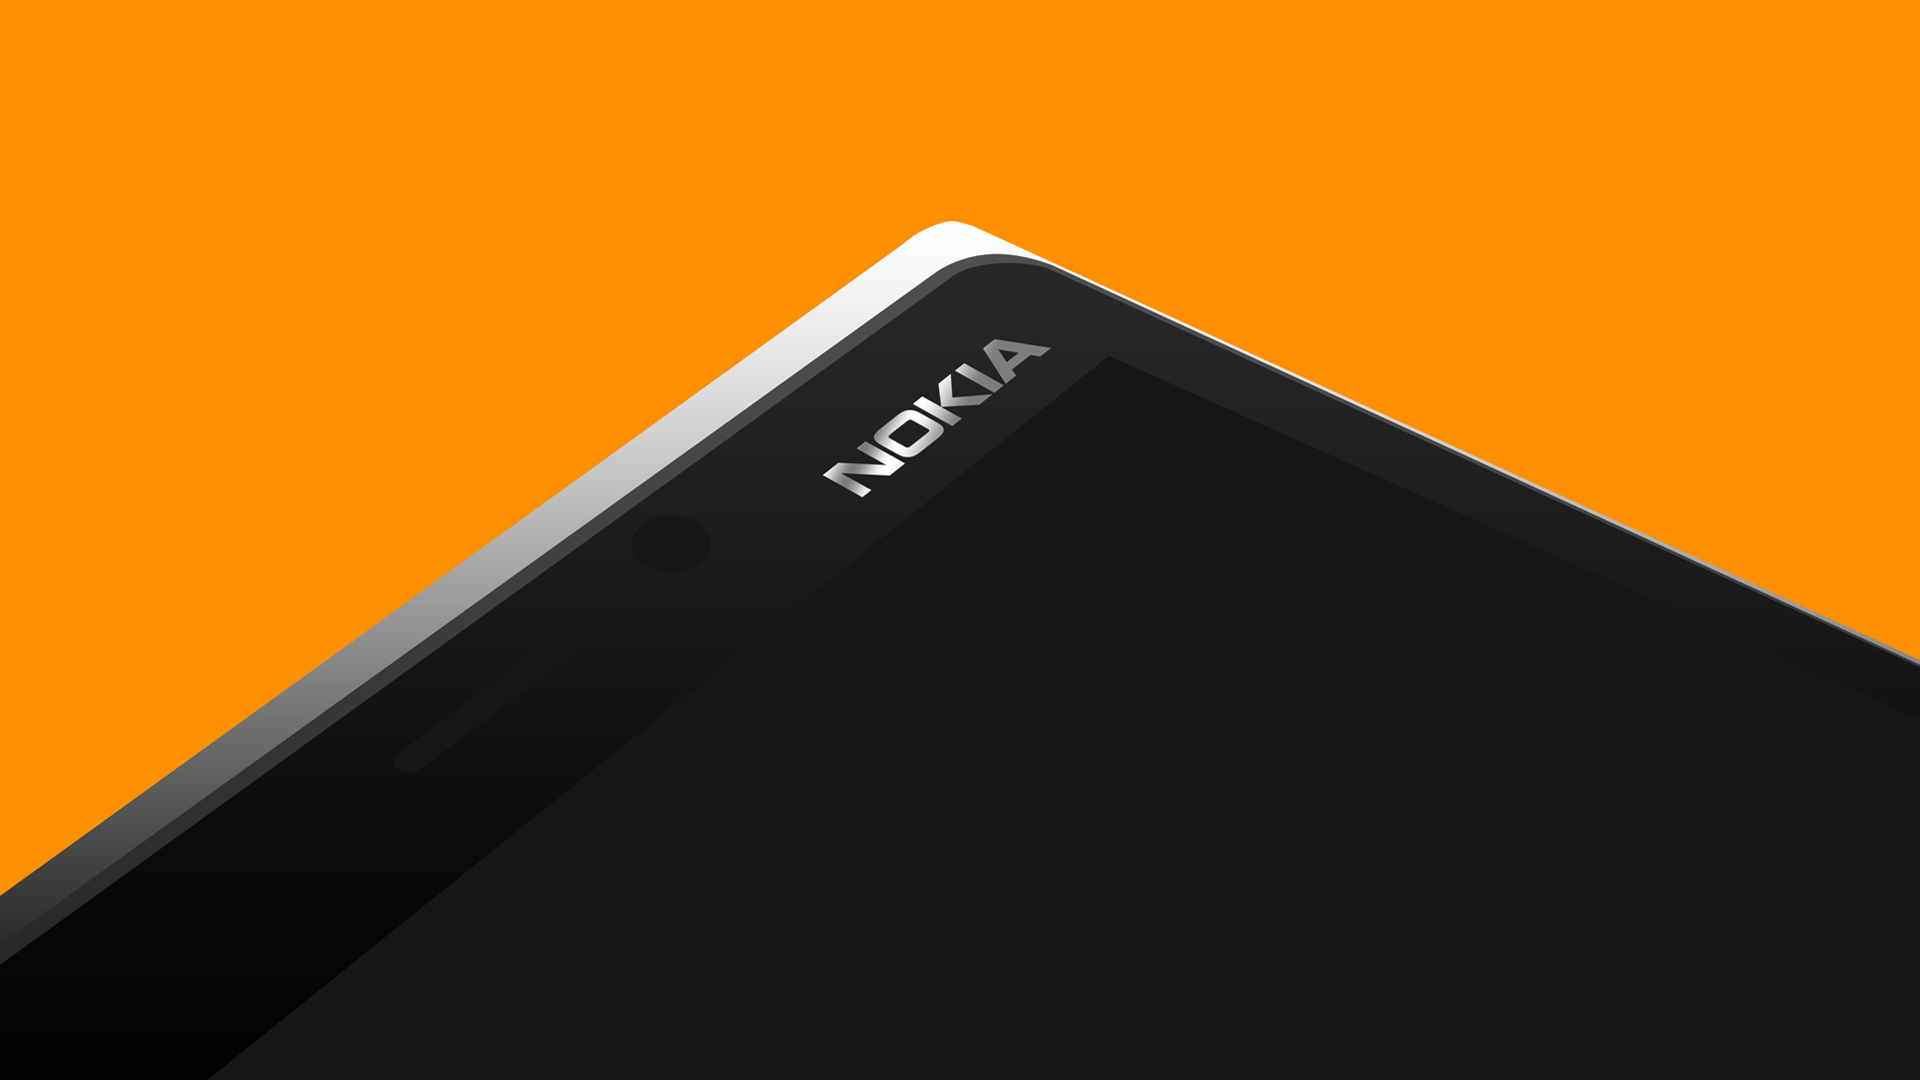 يحتوي Nokia 9 PureView على قارئ لبصمات الأصابع أسفل الشاشة 1